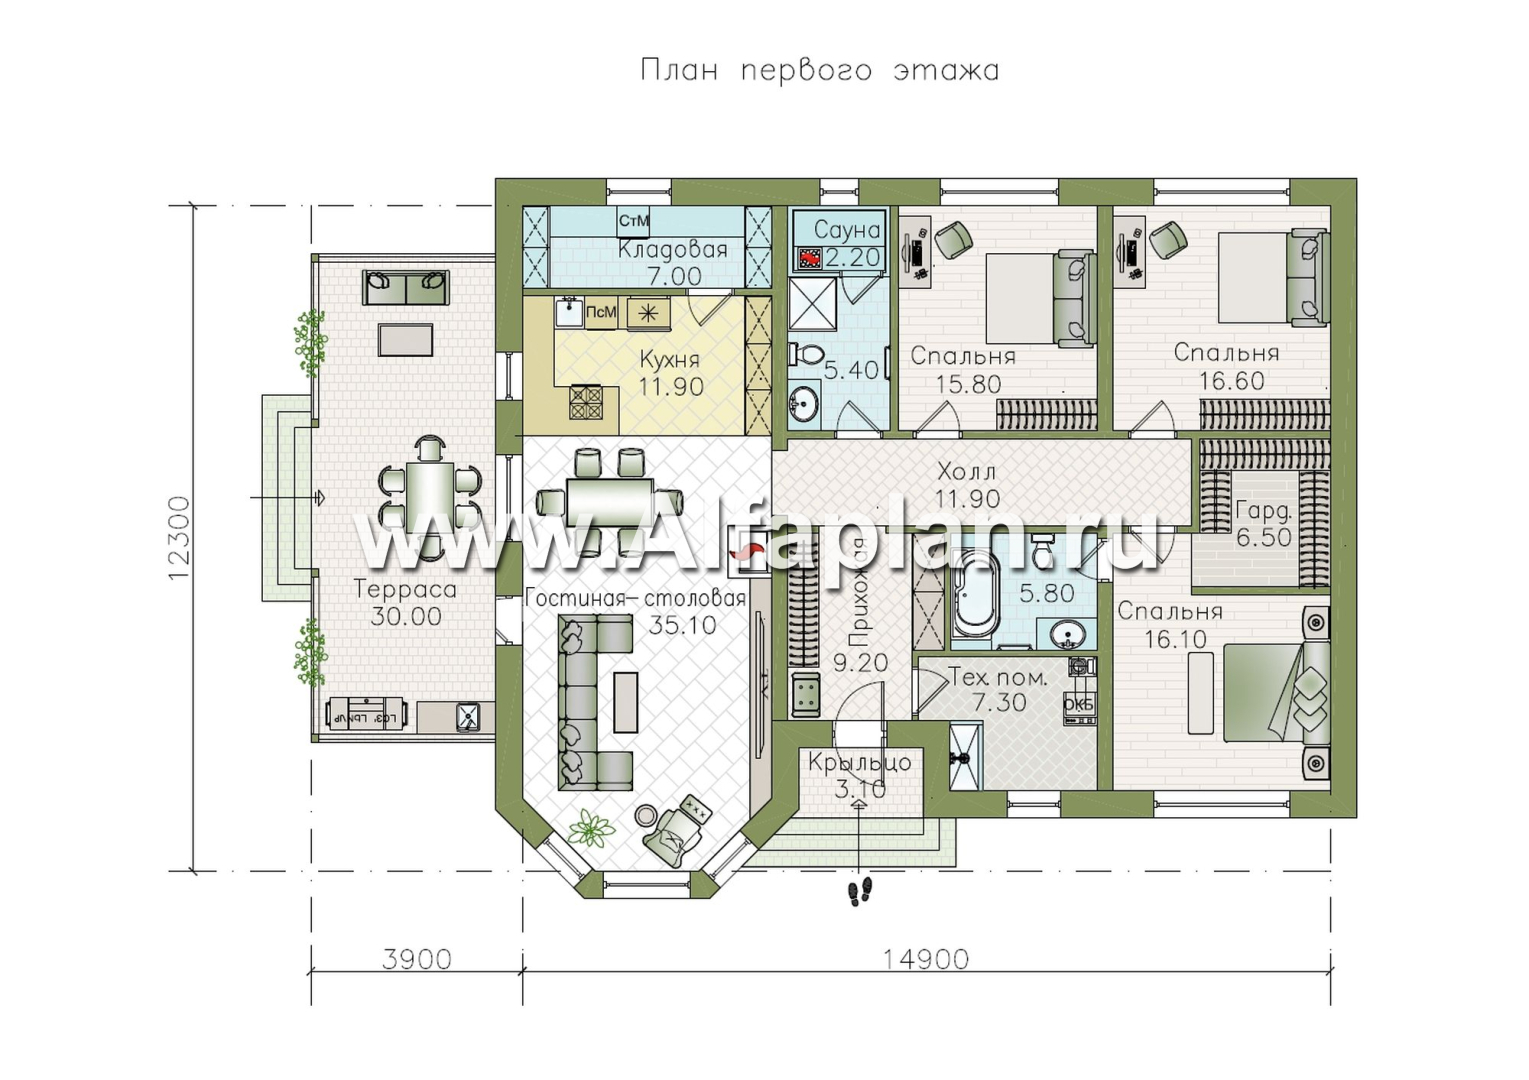 «Розенхайм» - проект одноэтажного дома в баварском стиле, планировка гостиная с эркером, кабинет и 2 спальни, с террасой - план дома